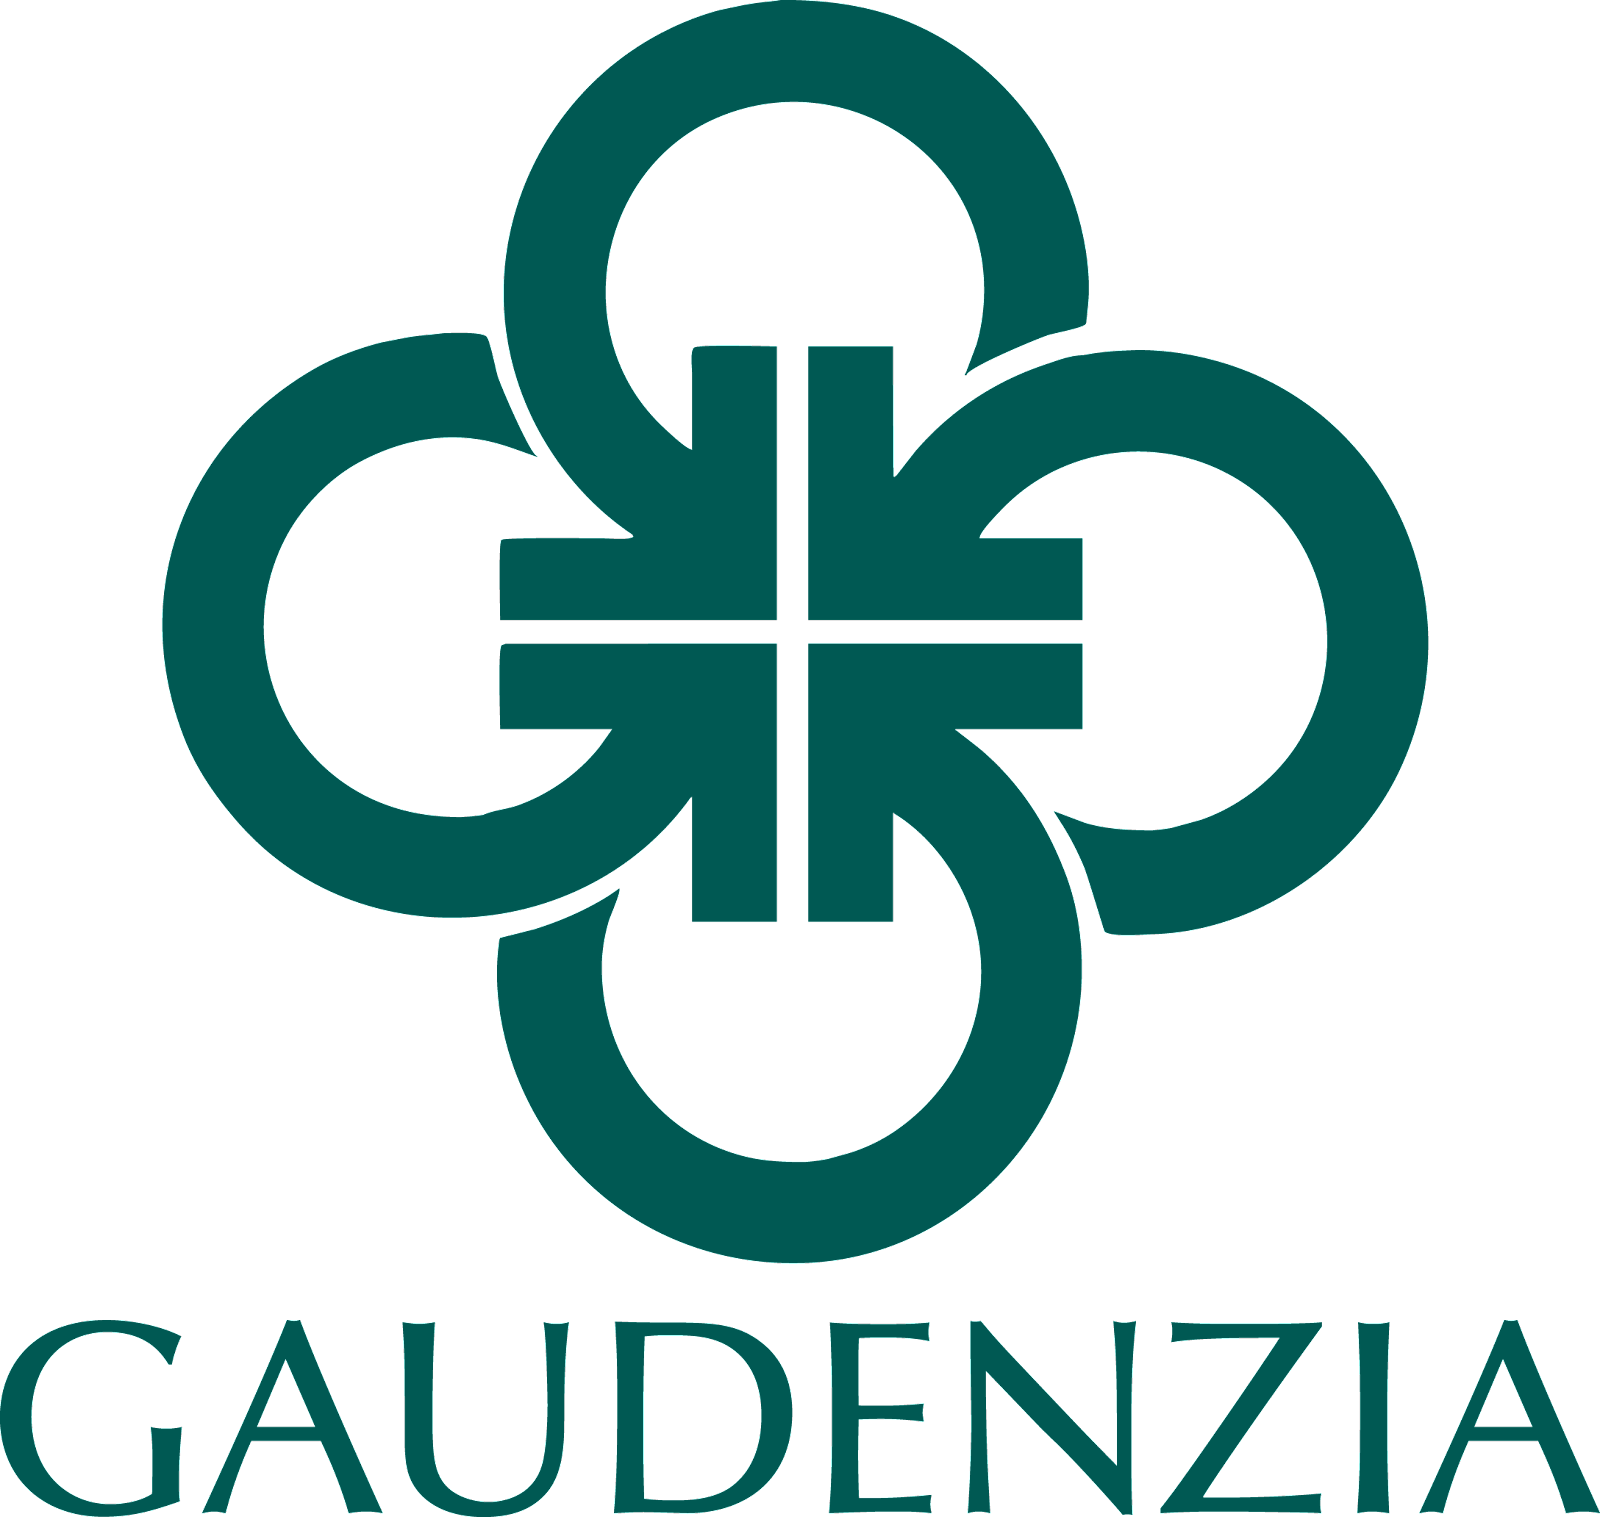 Gaudenzia - Kindred House